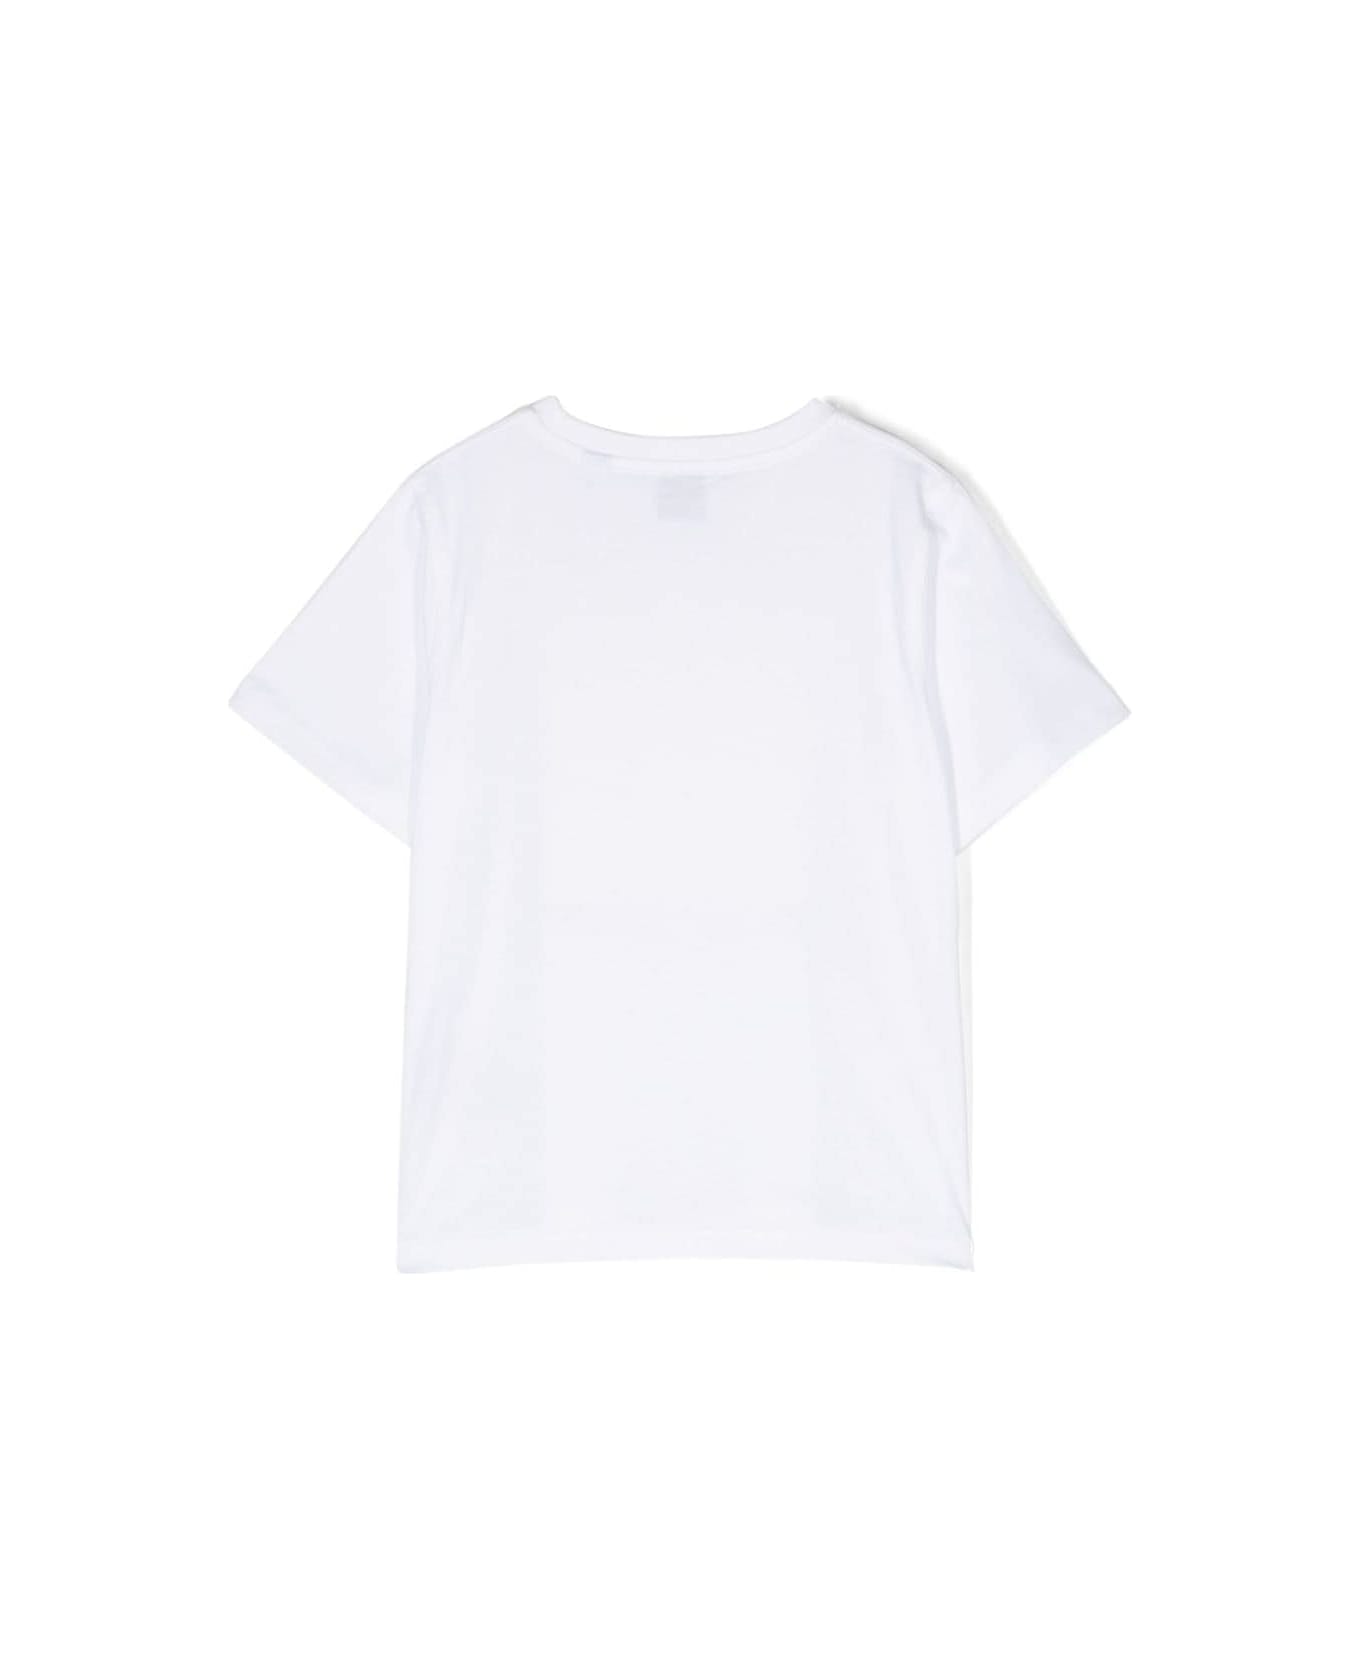 Burberry T-shirt Bianca In Jersey Di Cotone Bambino - Bianco